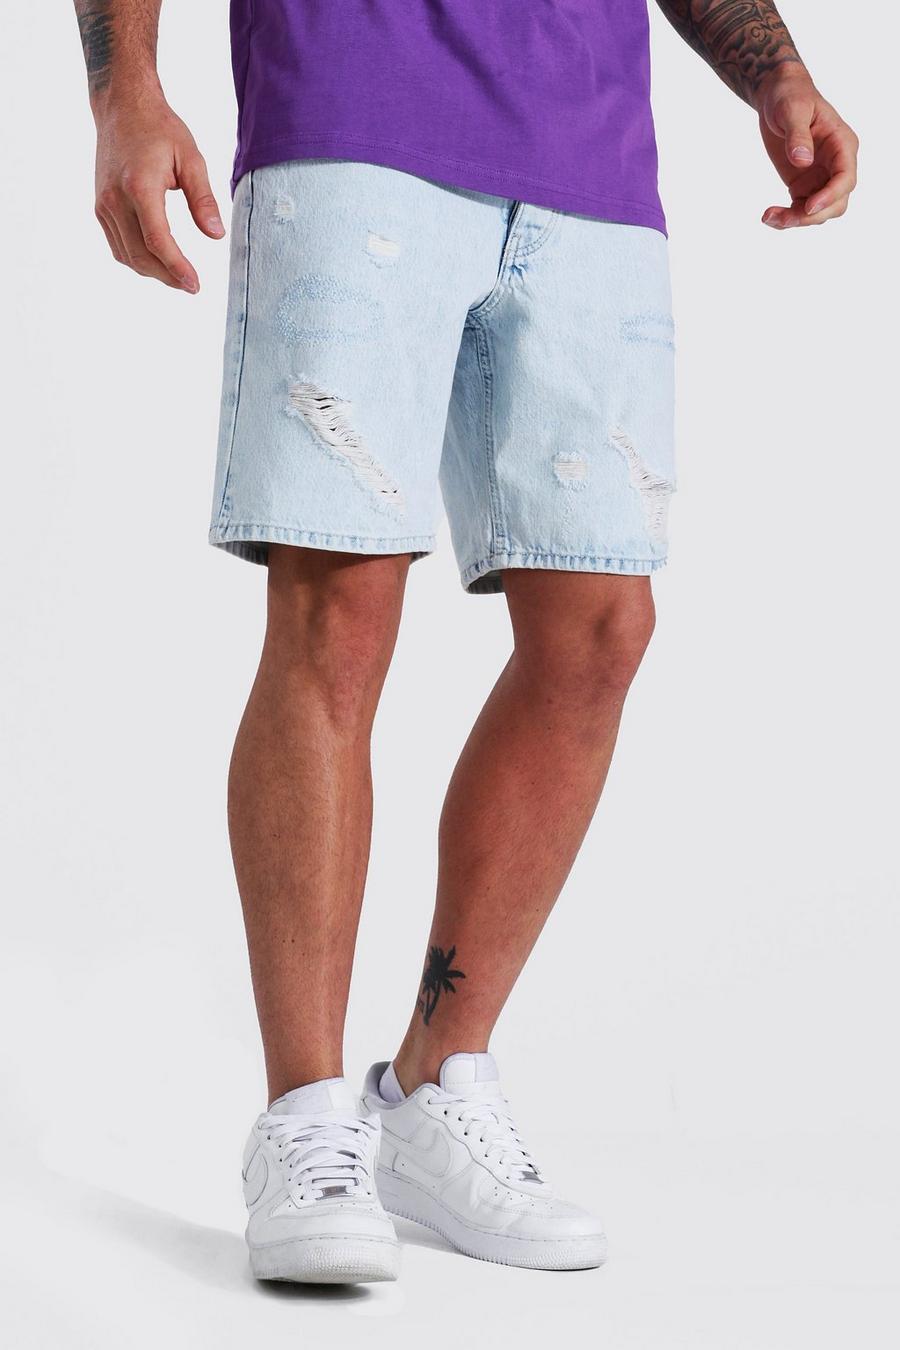 Pantalones cortos vaqueros sin tratar ajustados con varios desgarros, Ice blue image number 1